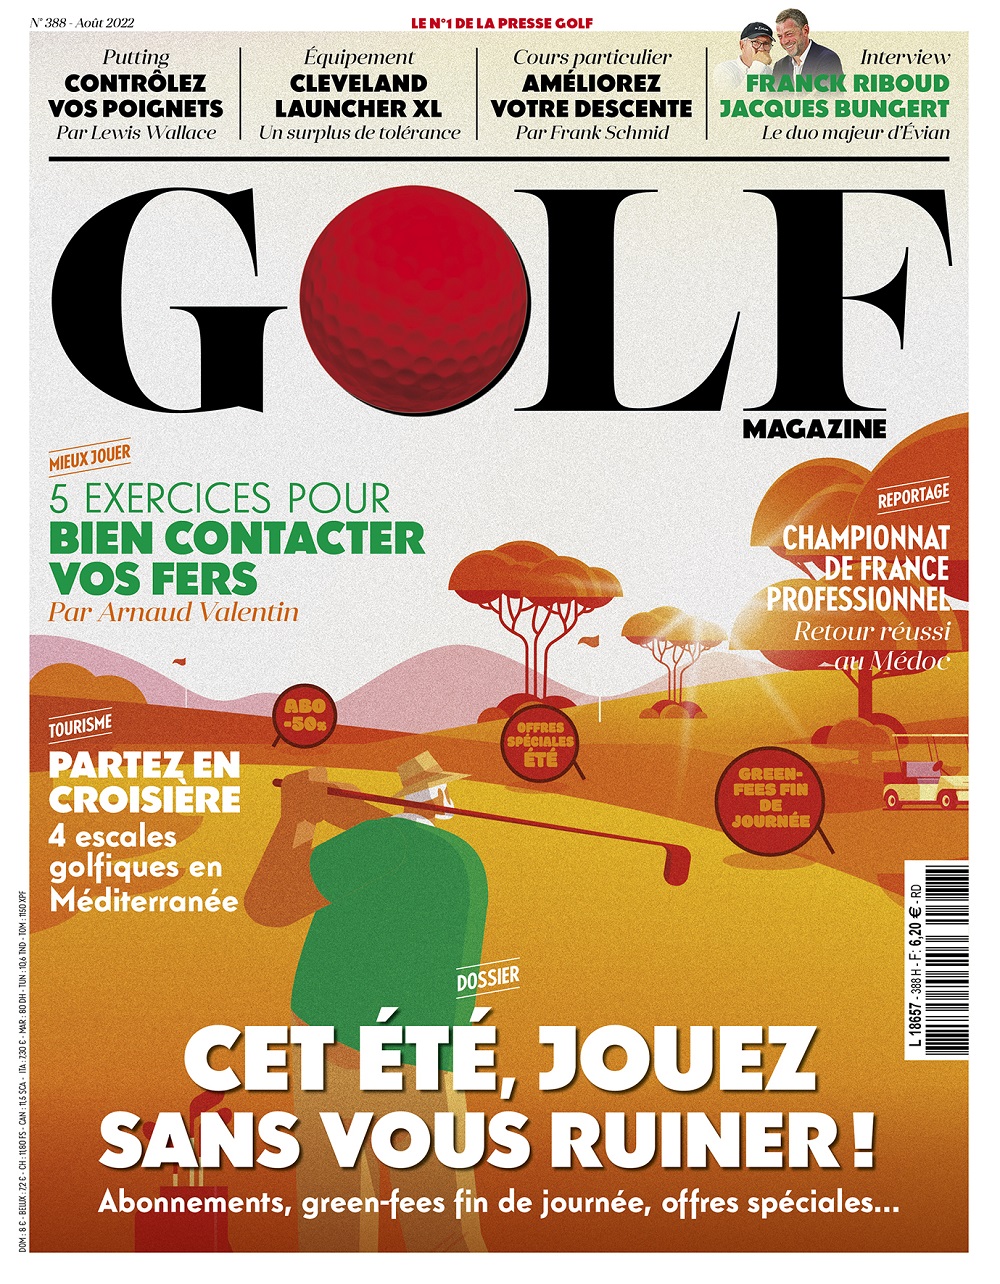 Le Golf Magazine n°388 est en kiosque !